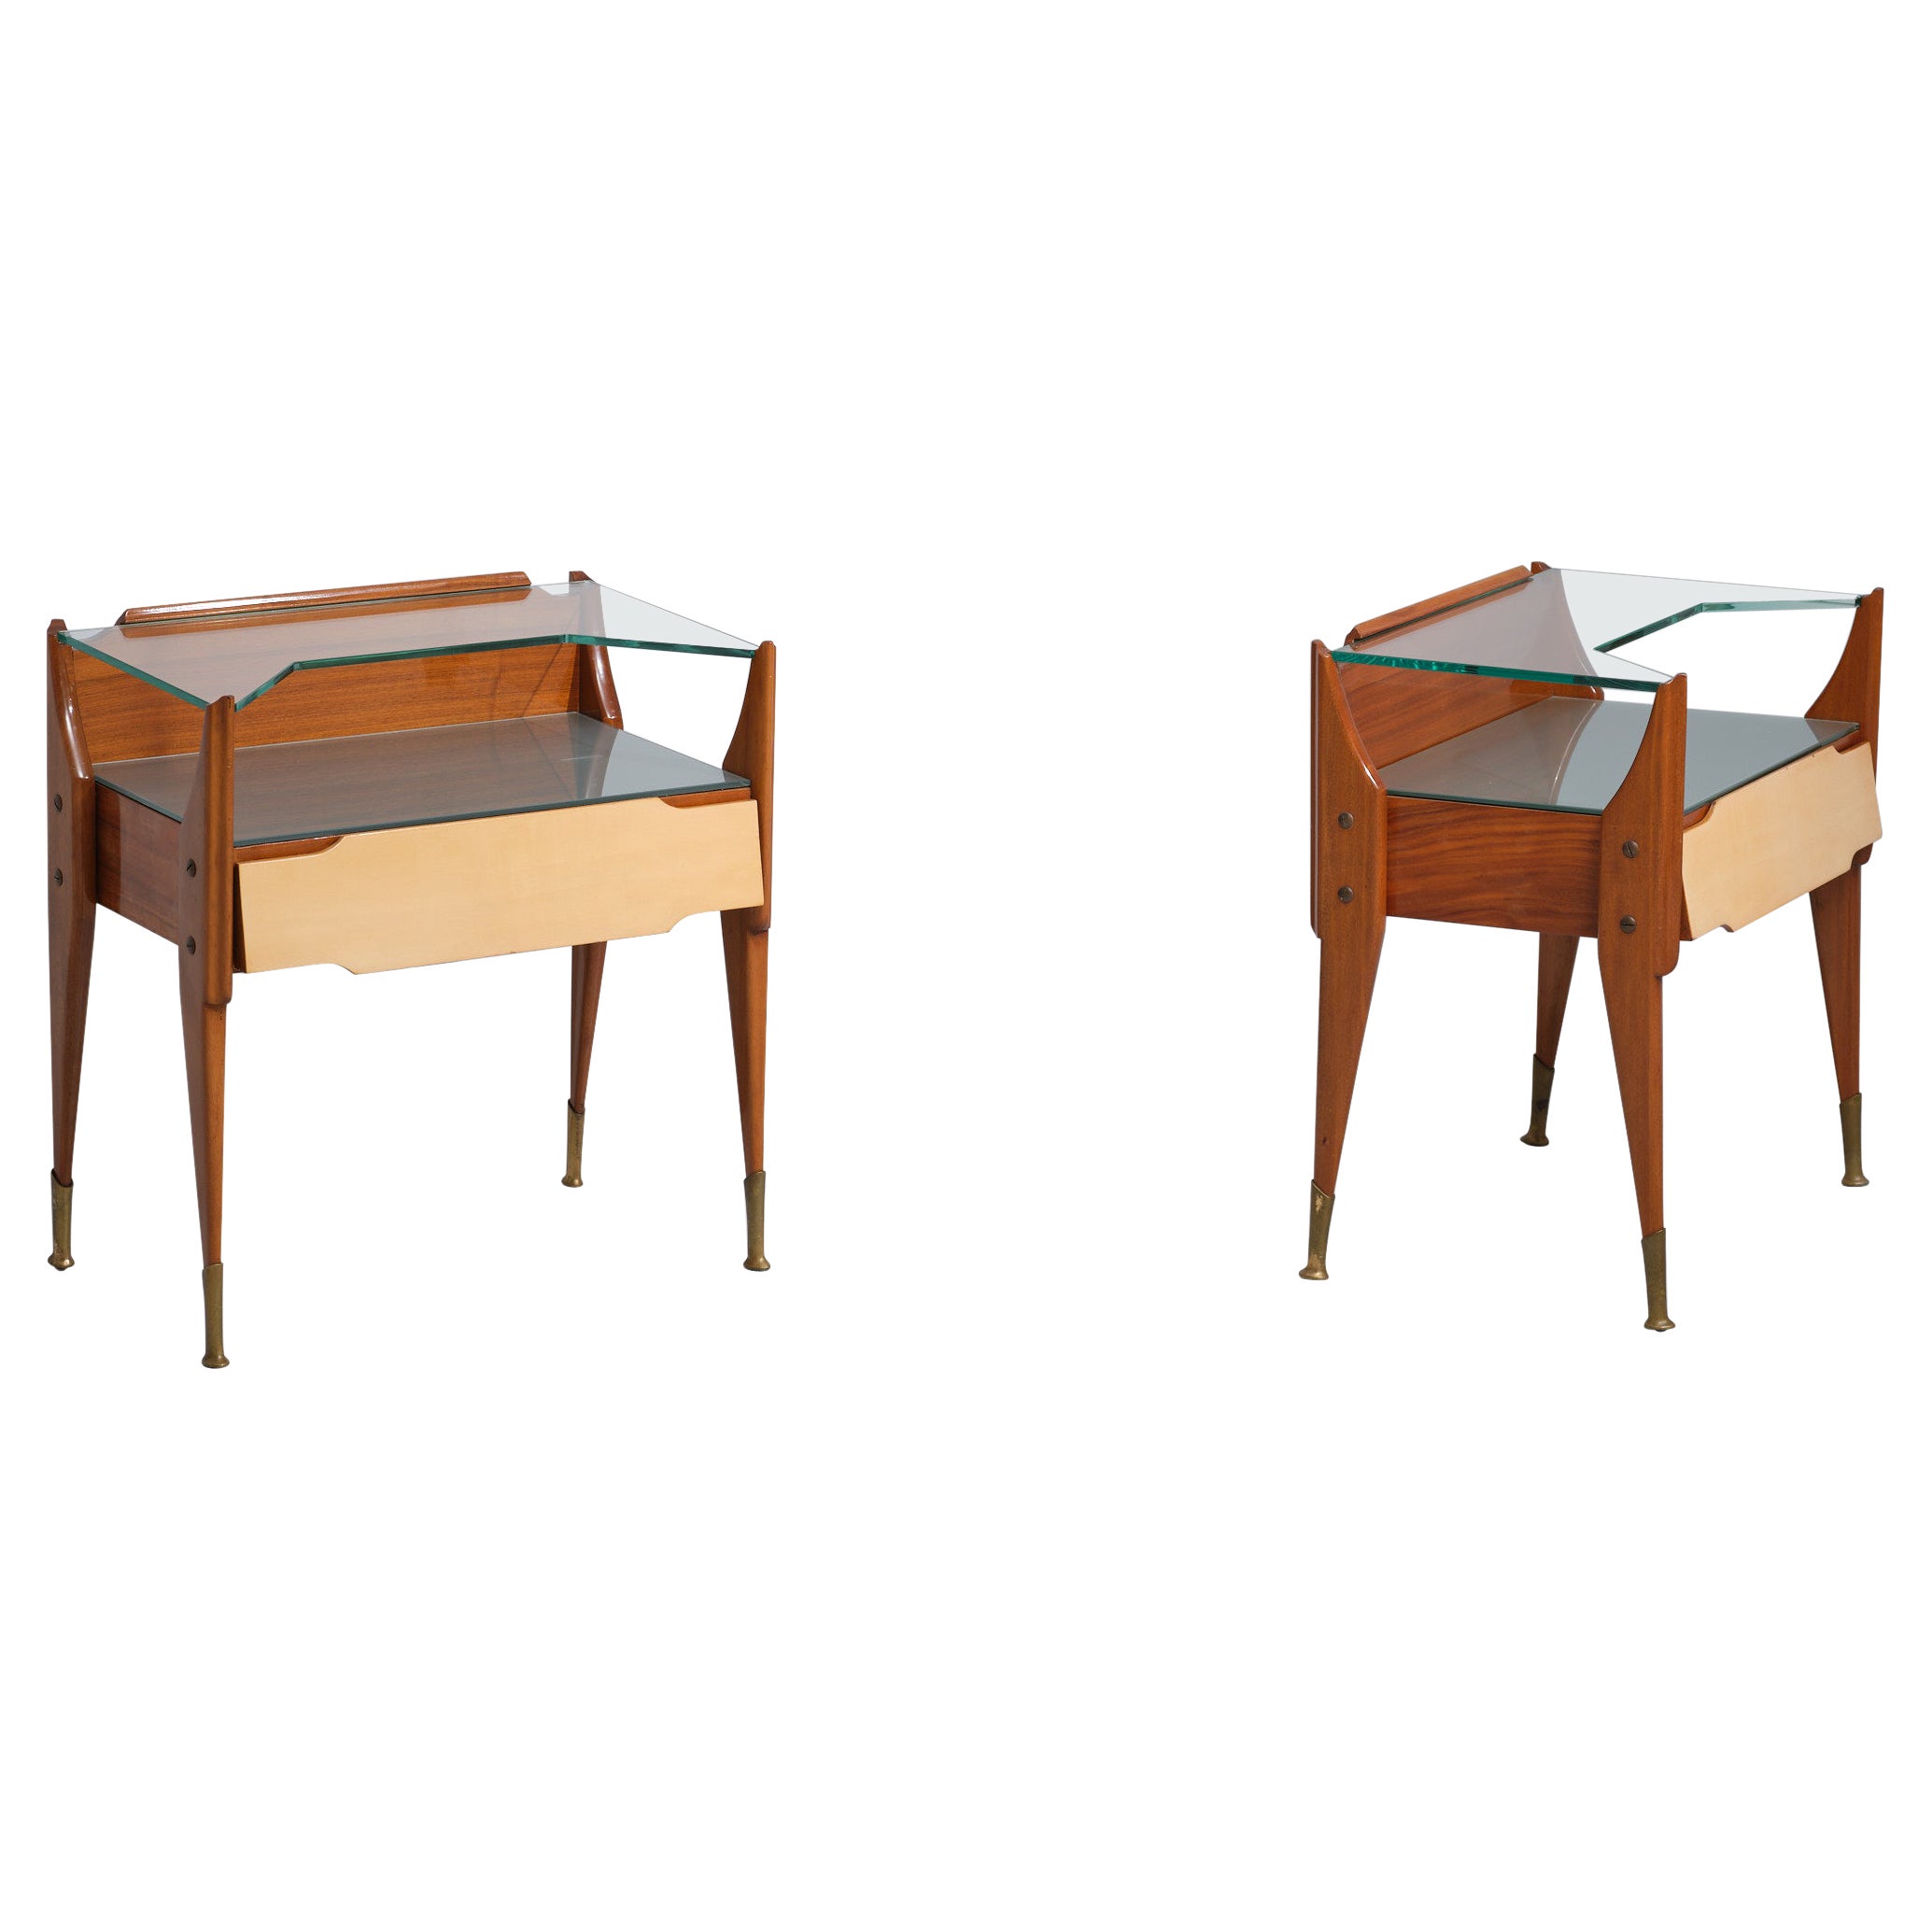 Exquisite Italian Craftsmanship: Vintage Teak Wood Bedside Tables